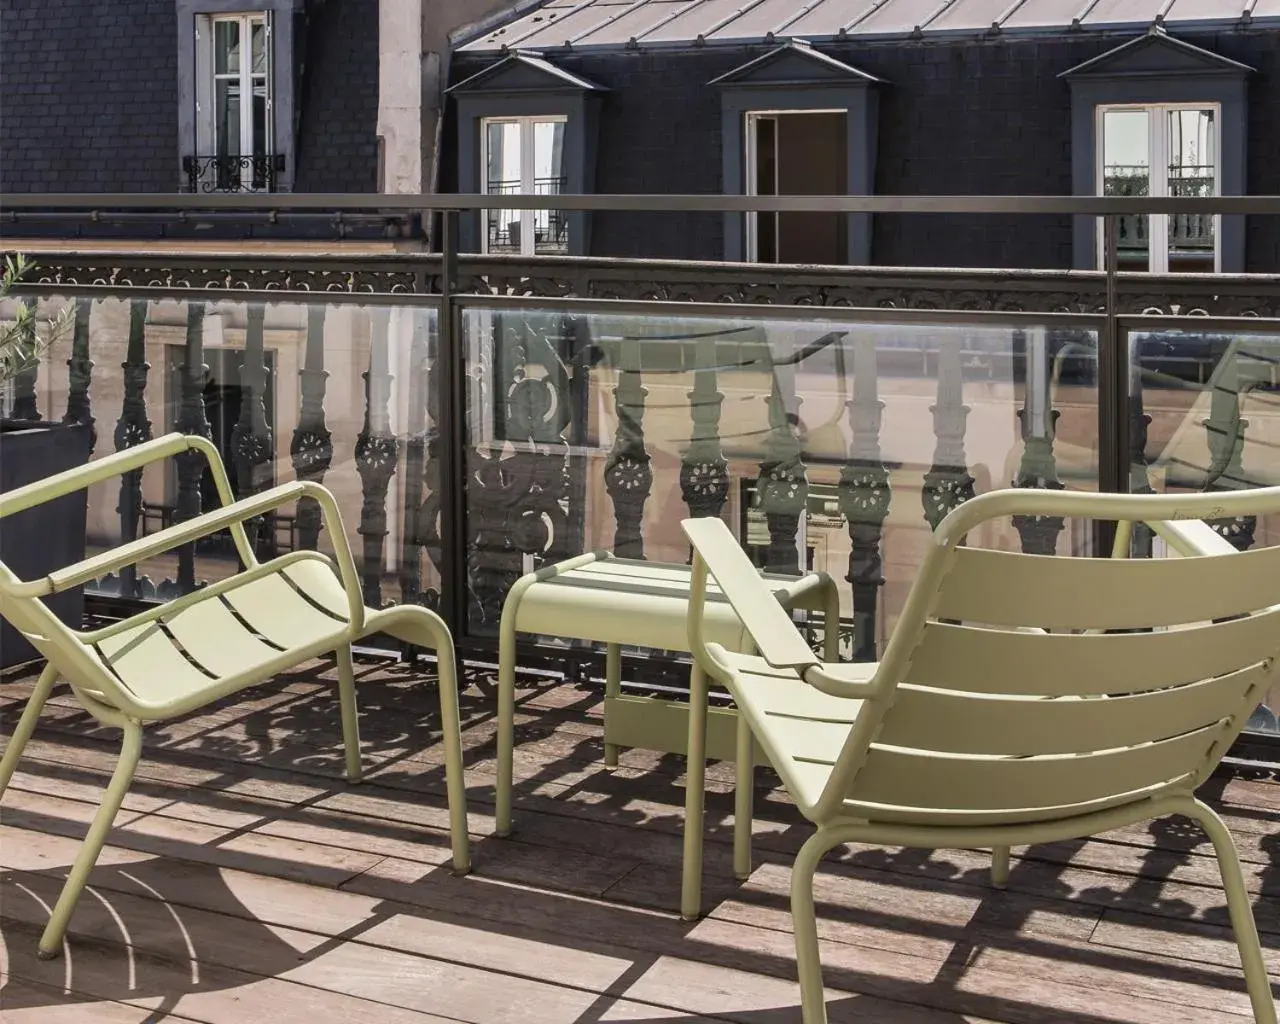 Balcony/Terrace in Newhotel Roblin